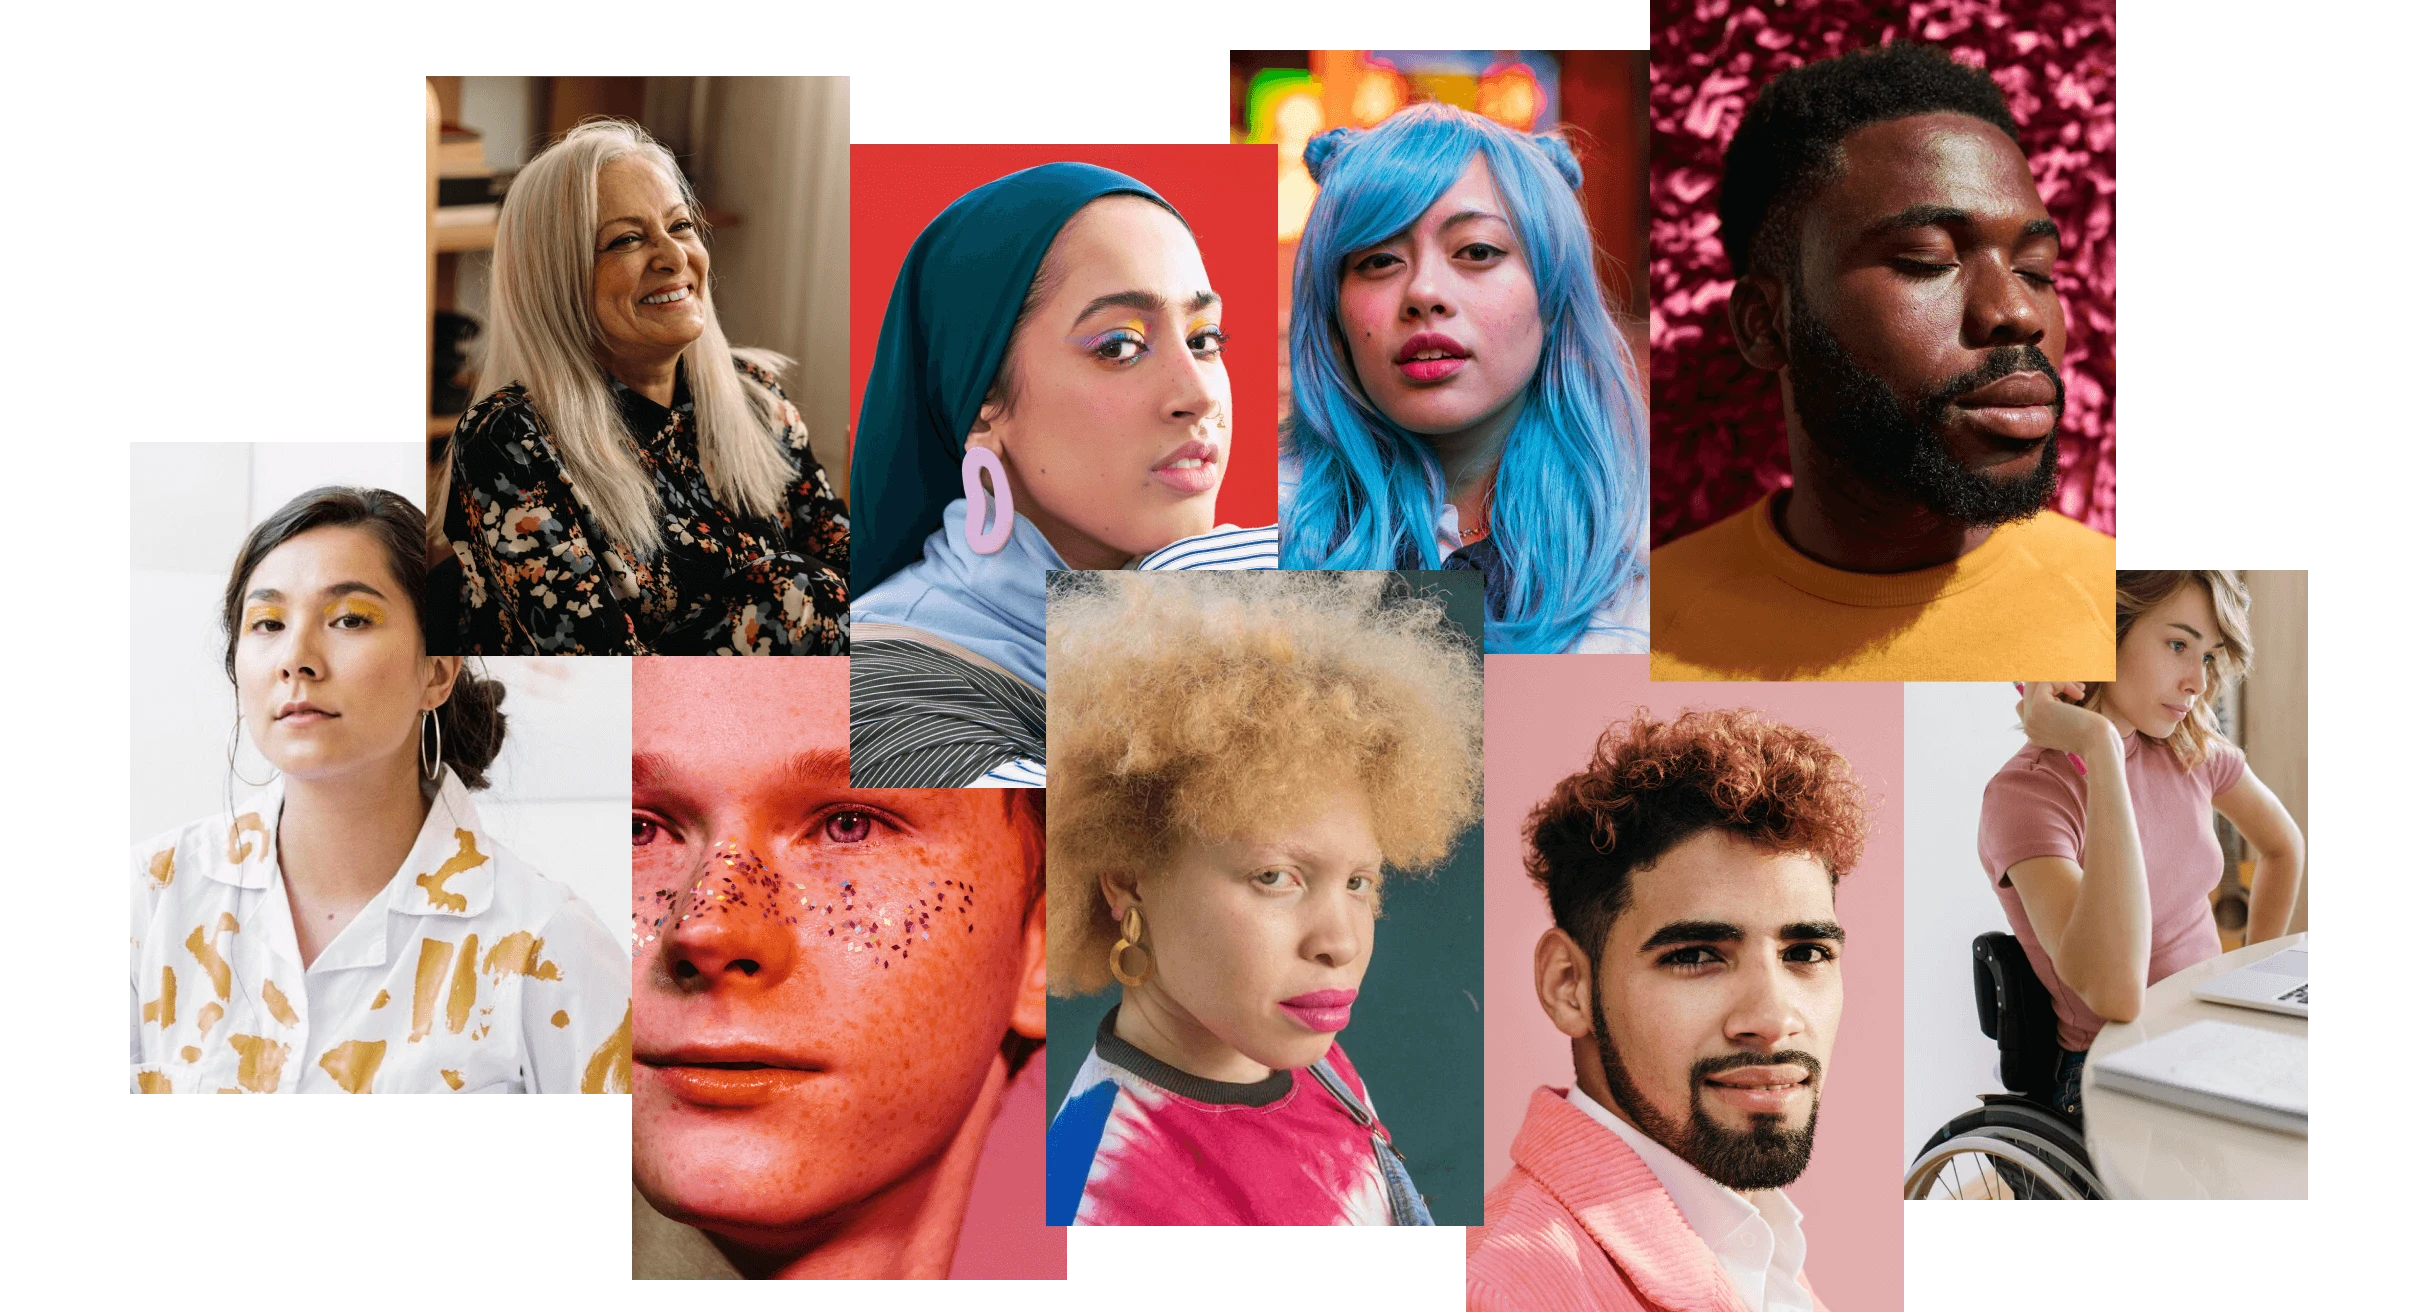 Un collage de personnes de différentes origines habillées dans des styles et couleurs audacieux